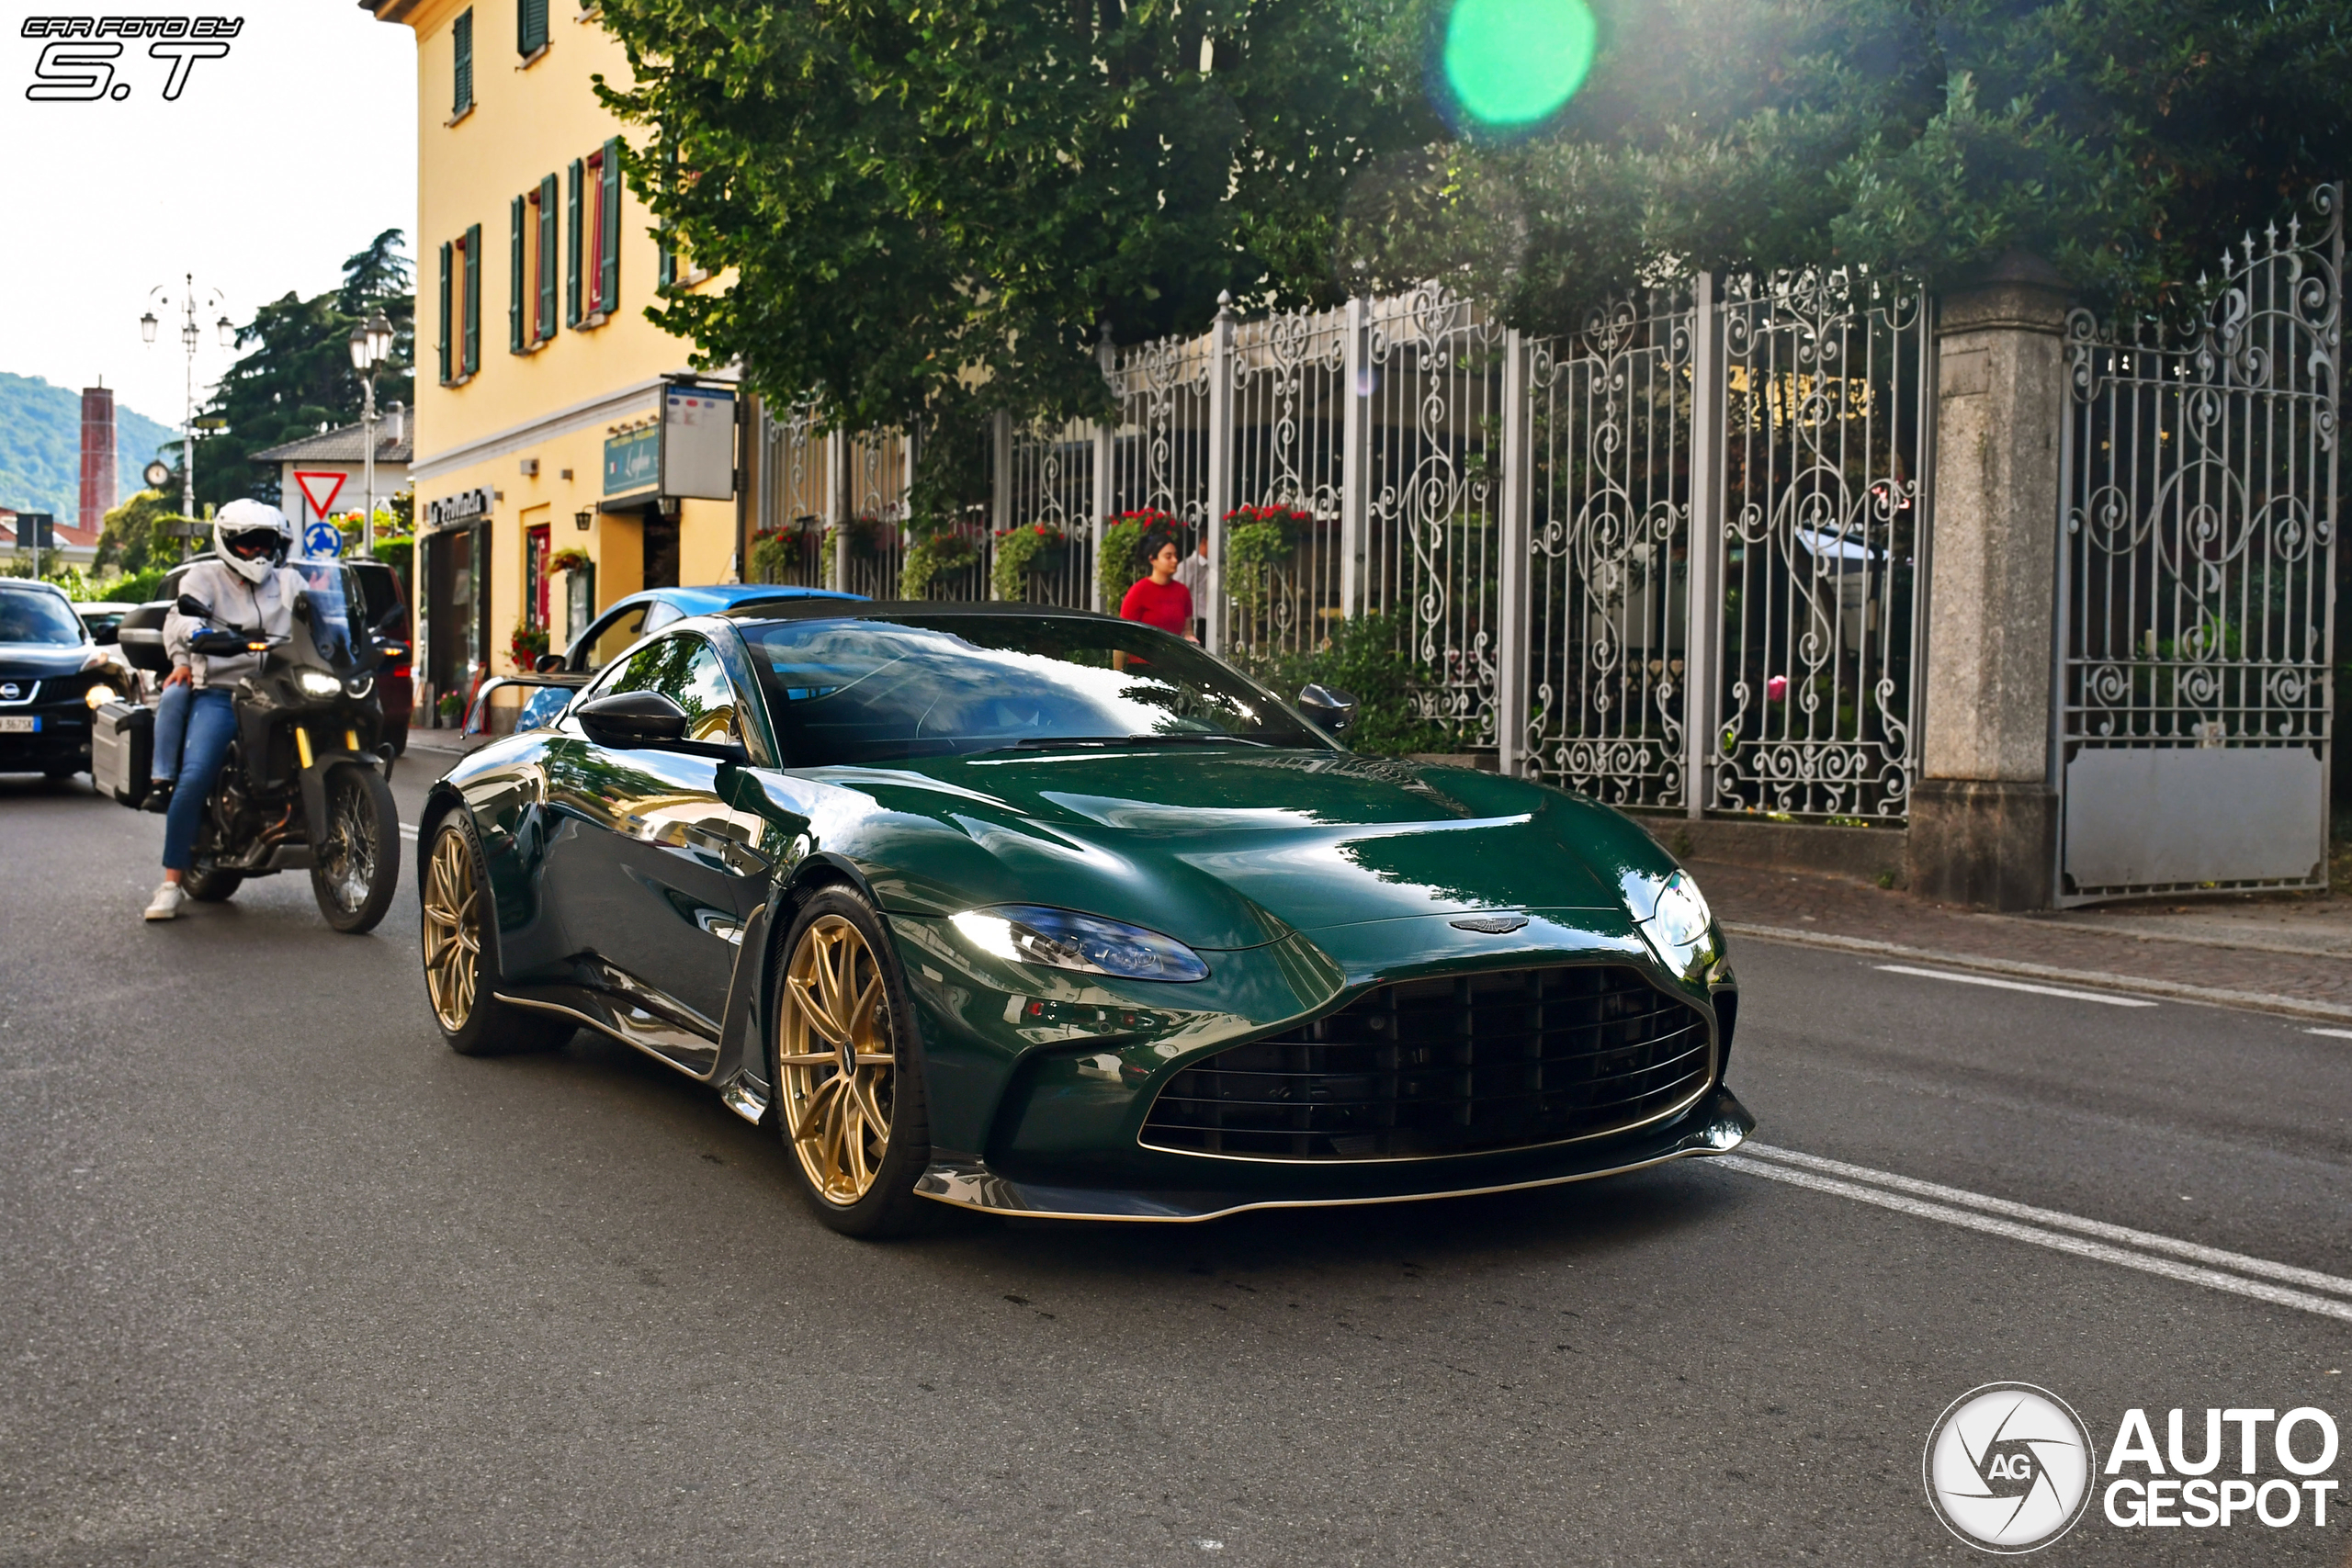 In Italië weten ze hoe ze Aston Martins samenstellen